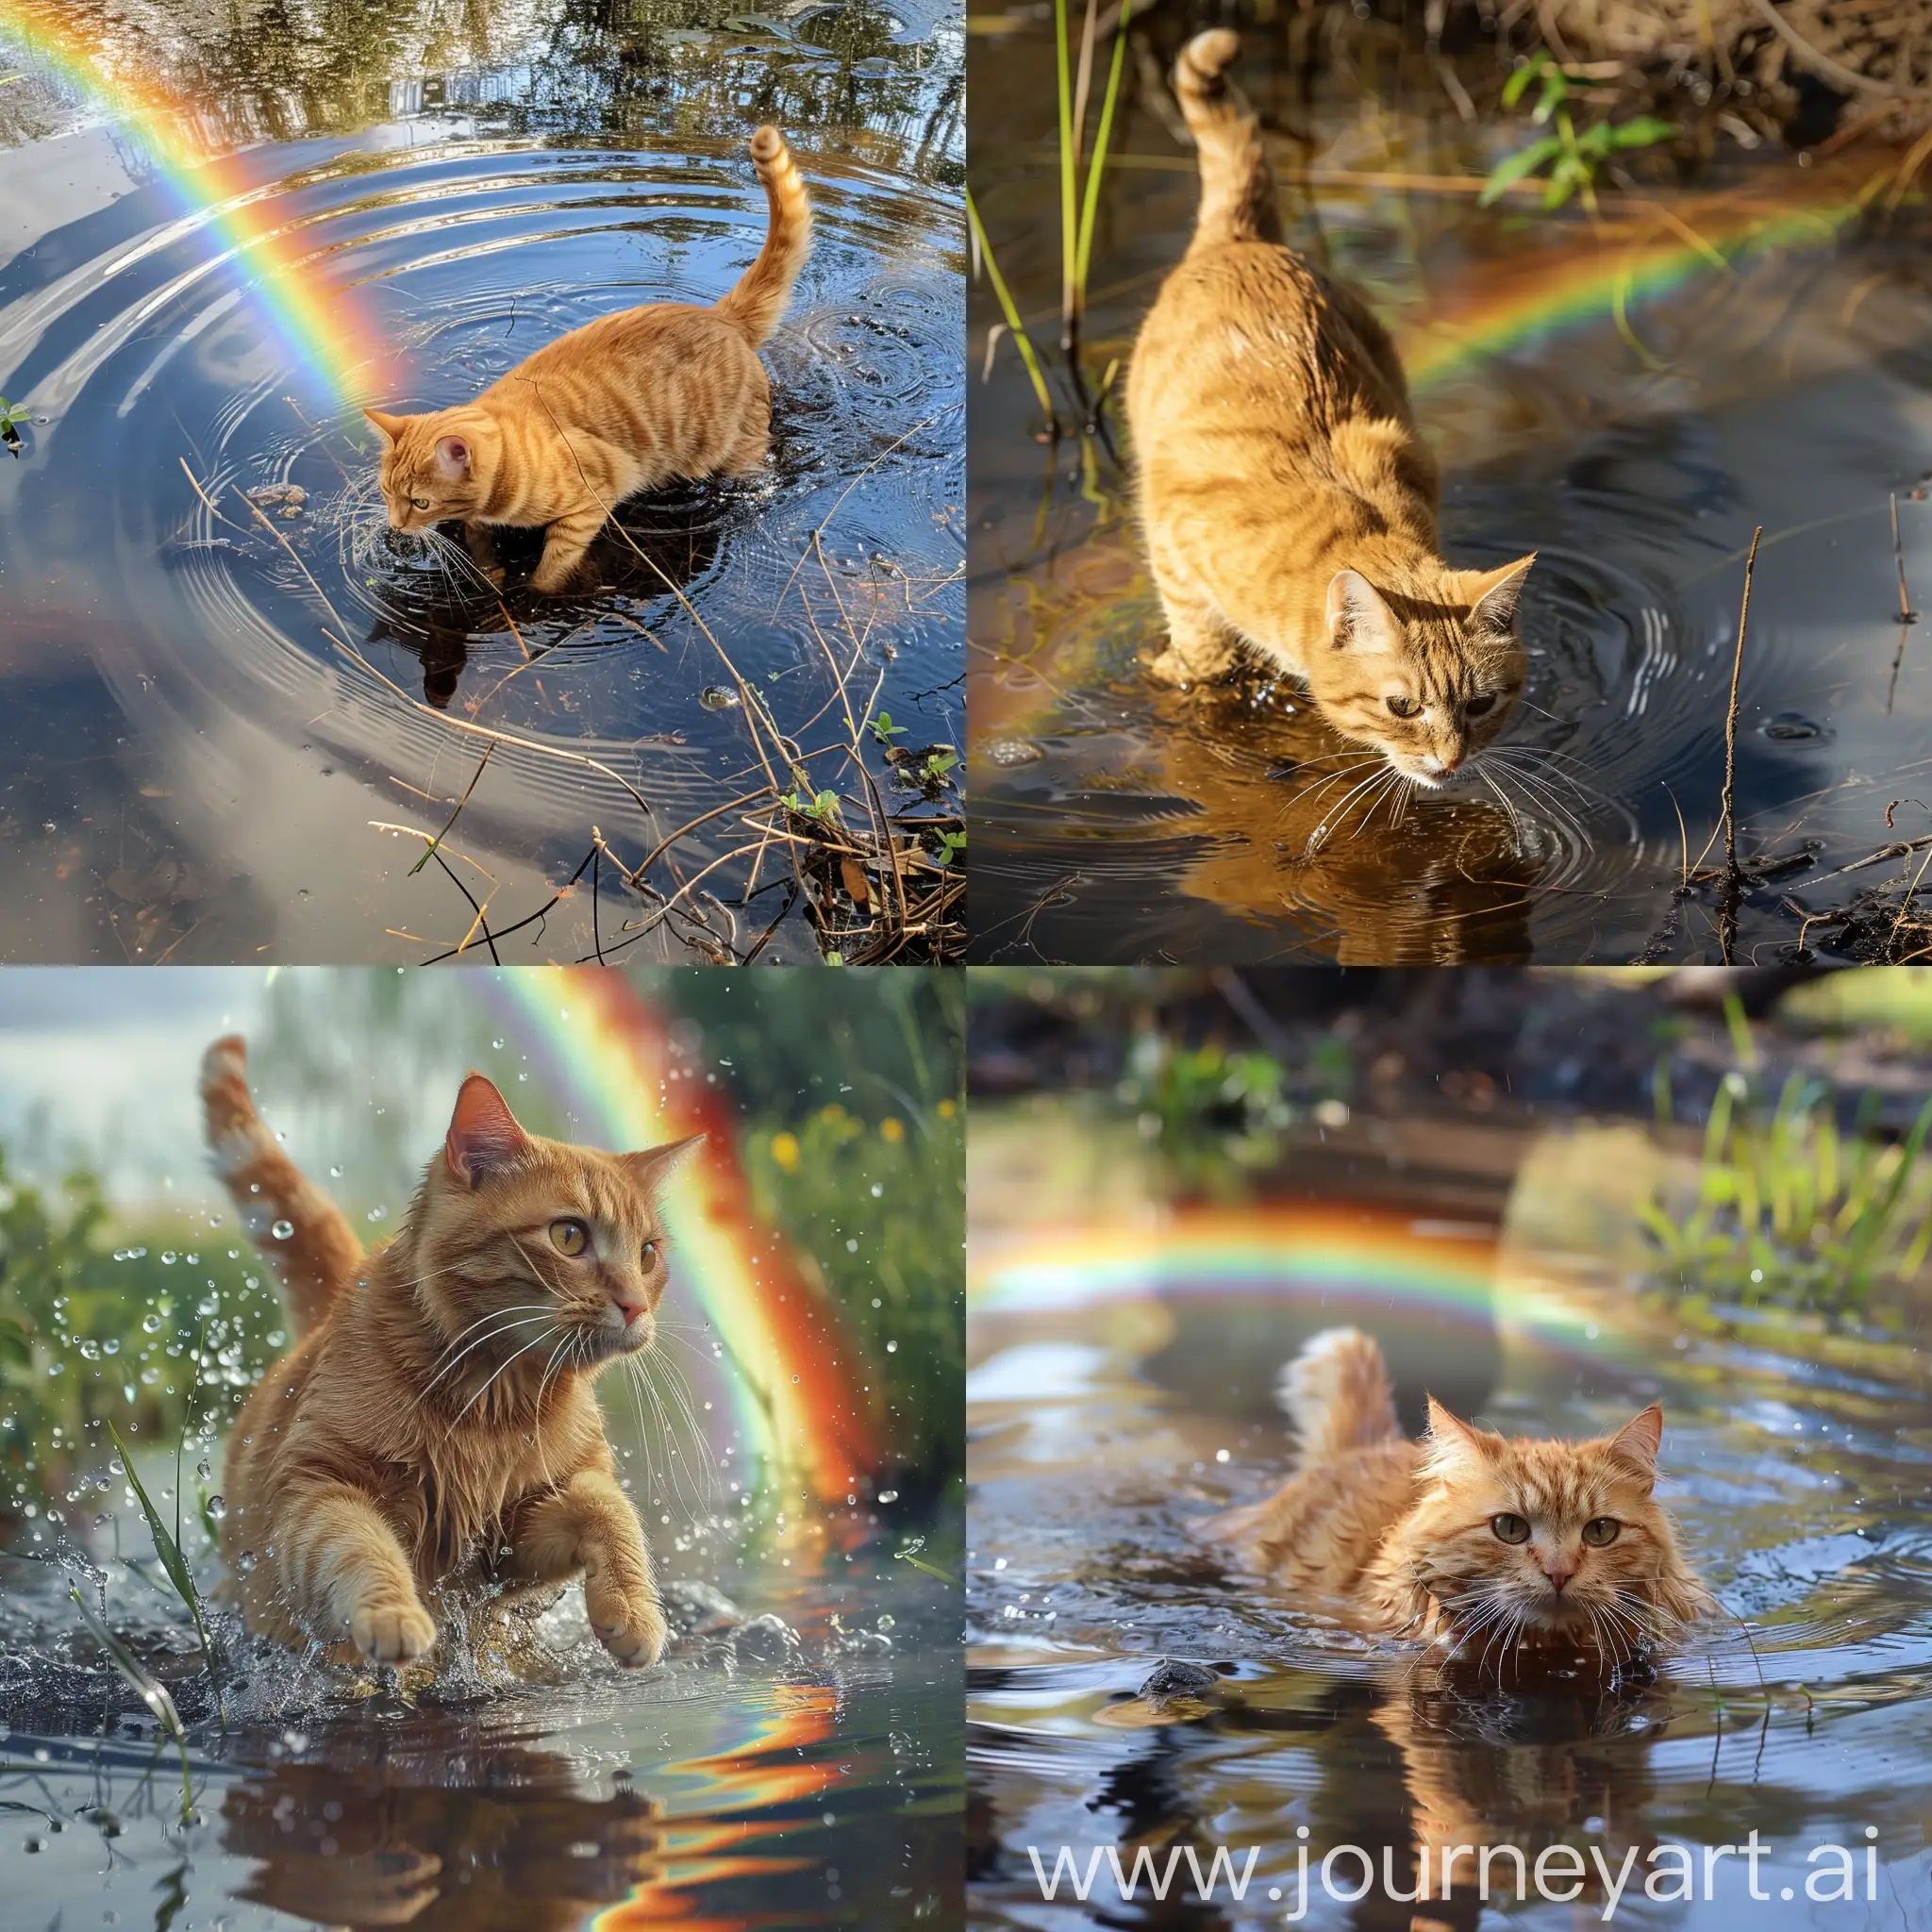 Playful-Orange-Cat-Enjoying-Pond-Reflections-with-Rainbow